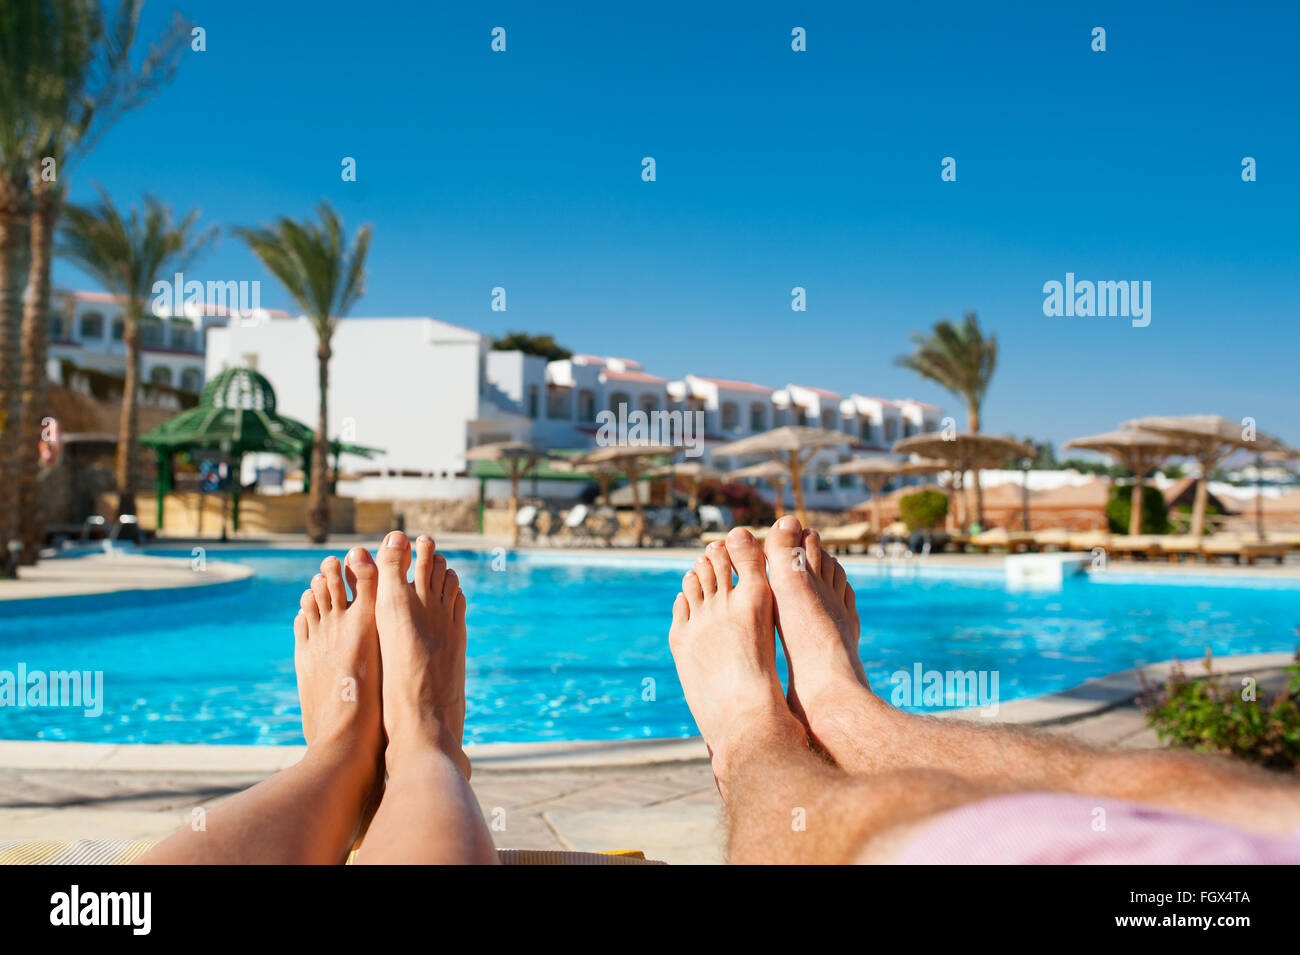 Las piernas masculinas y femeninas en el fondo de la piscina en el hotel Foto de stock